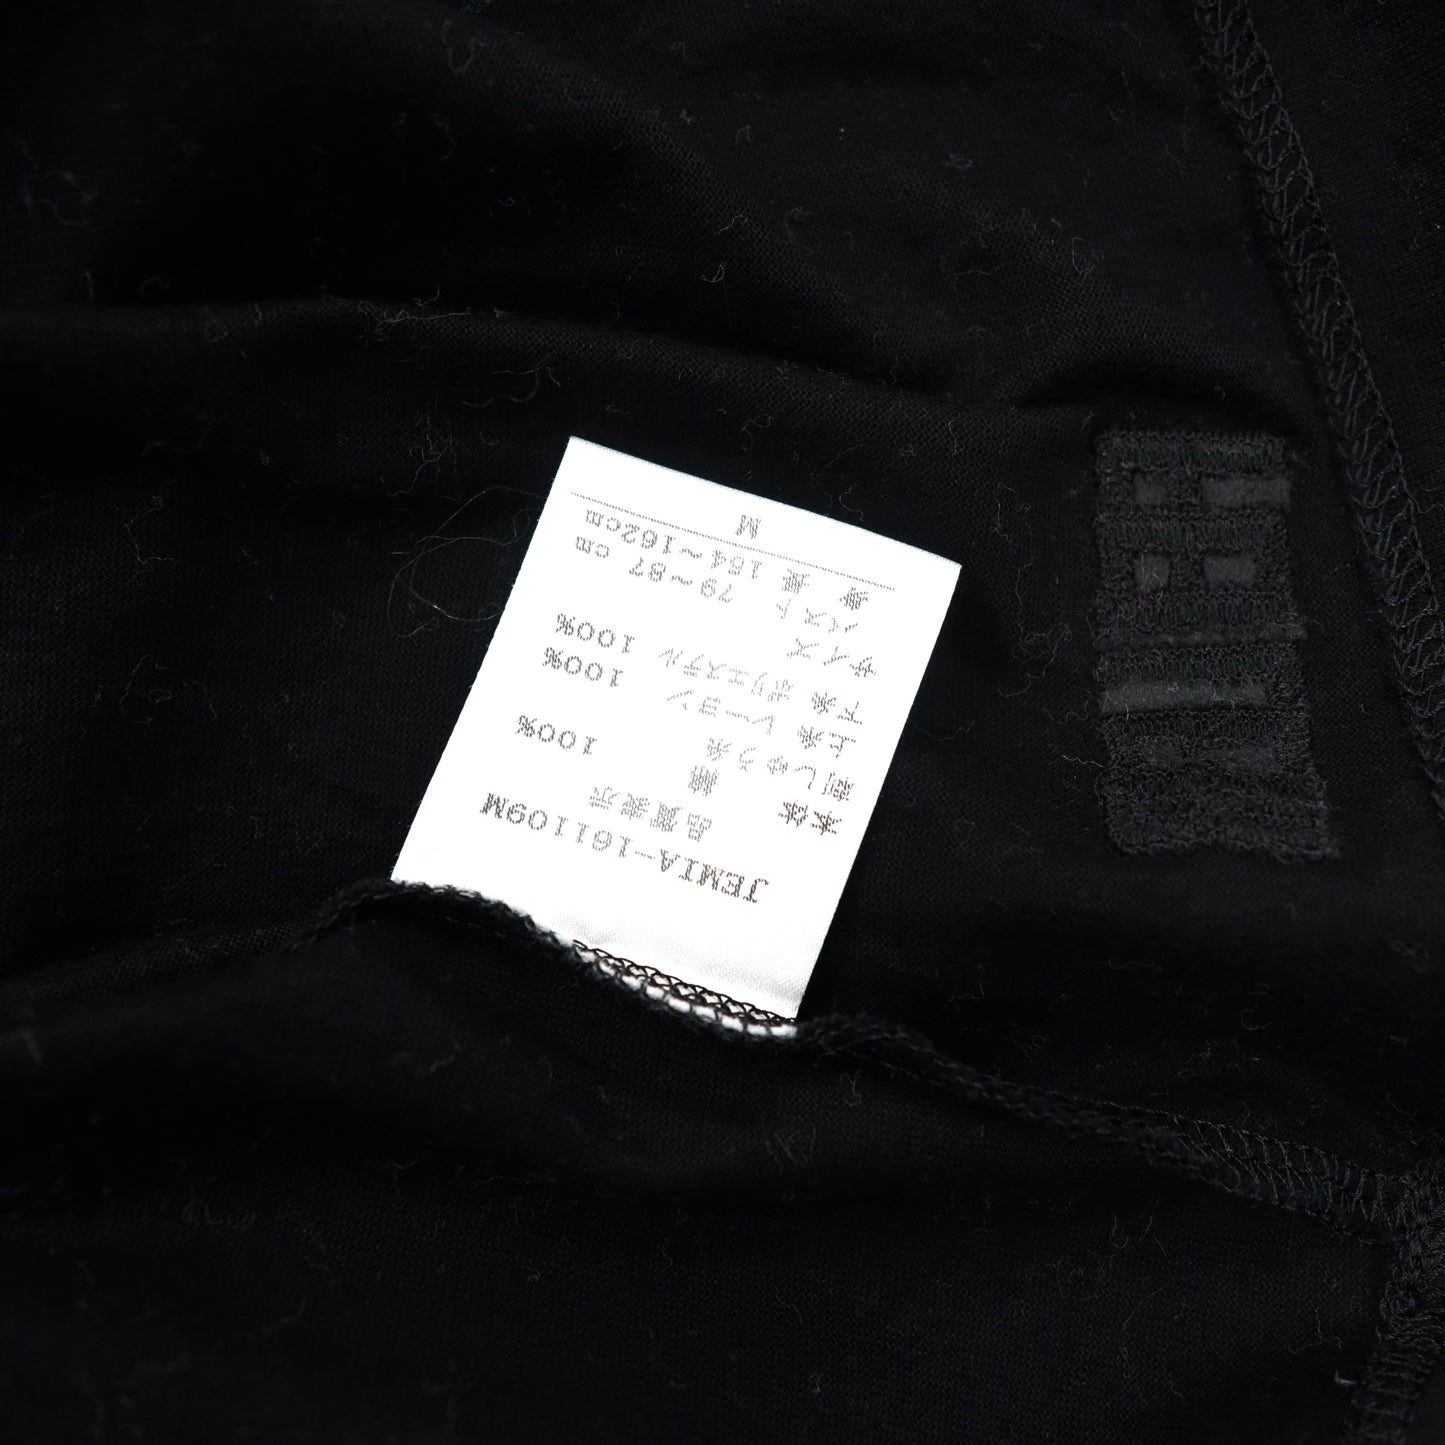 FEILER フラワー刺繍Tシャツ M ブラック コットン 日本製